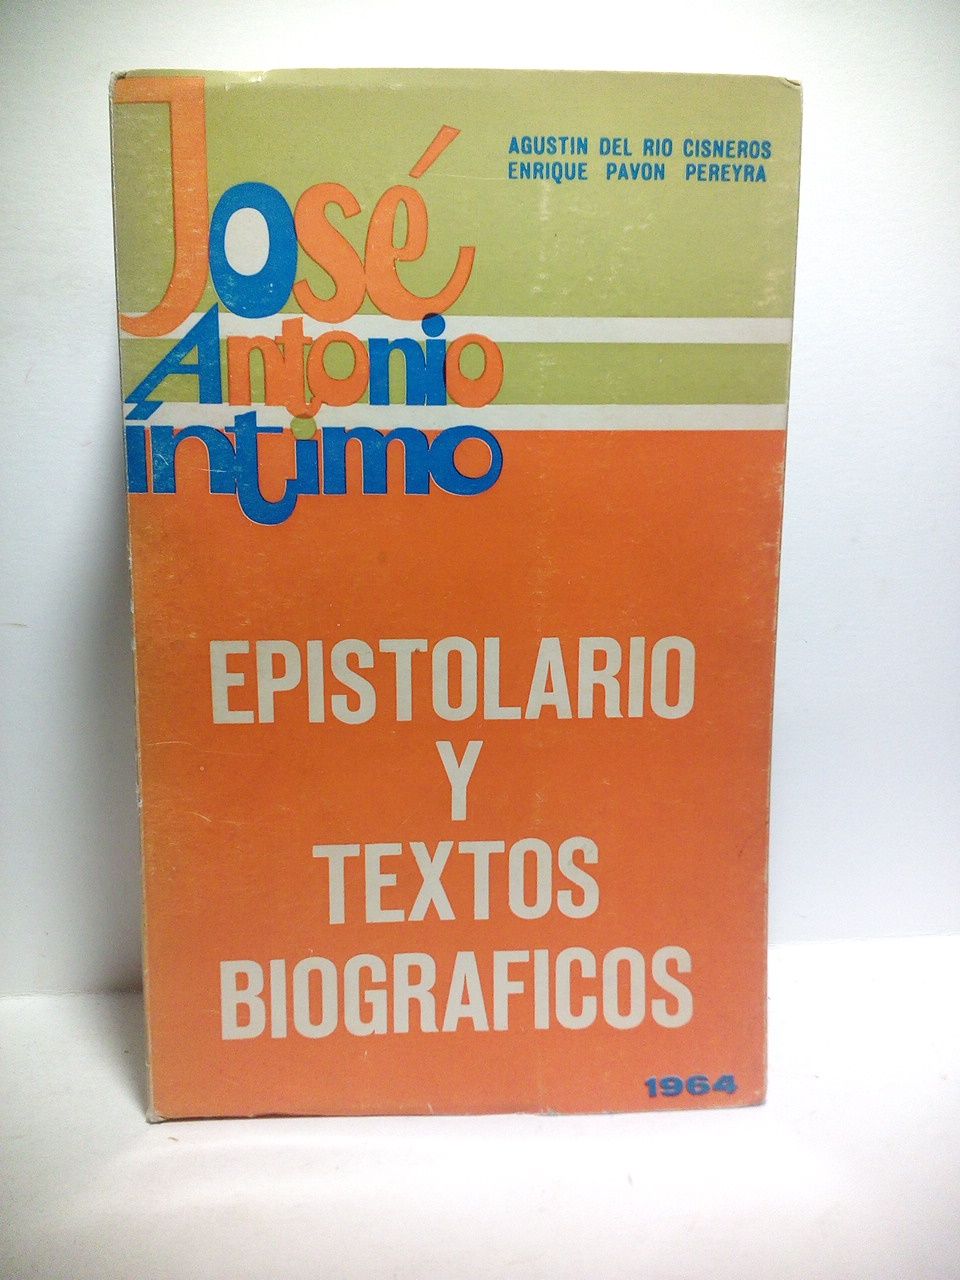 PRIMO DE RIVERA, Jos Antonio - Jos Antonio ntimo: Textos biogrficos y epistolario /  Recopilacin de AGUSTIN DEL RIO CISNEROS Y ENRIQUE PAVON PEREYRA